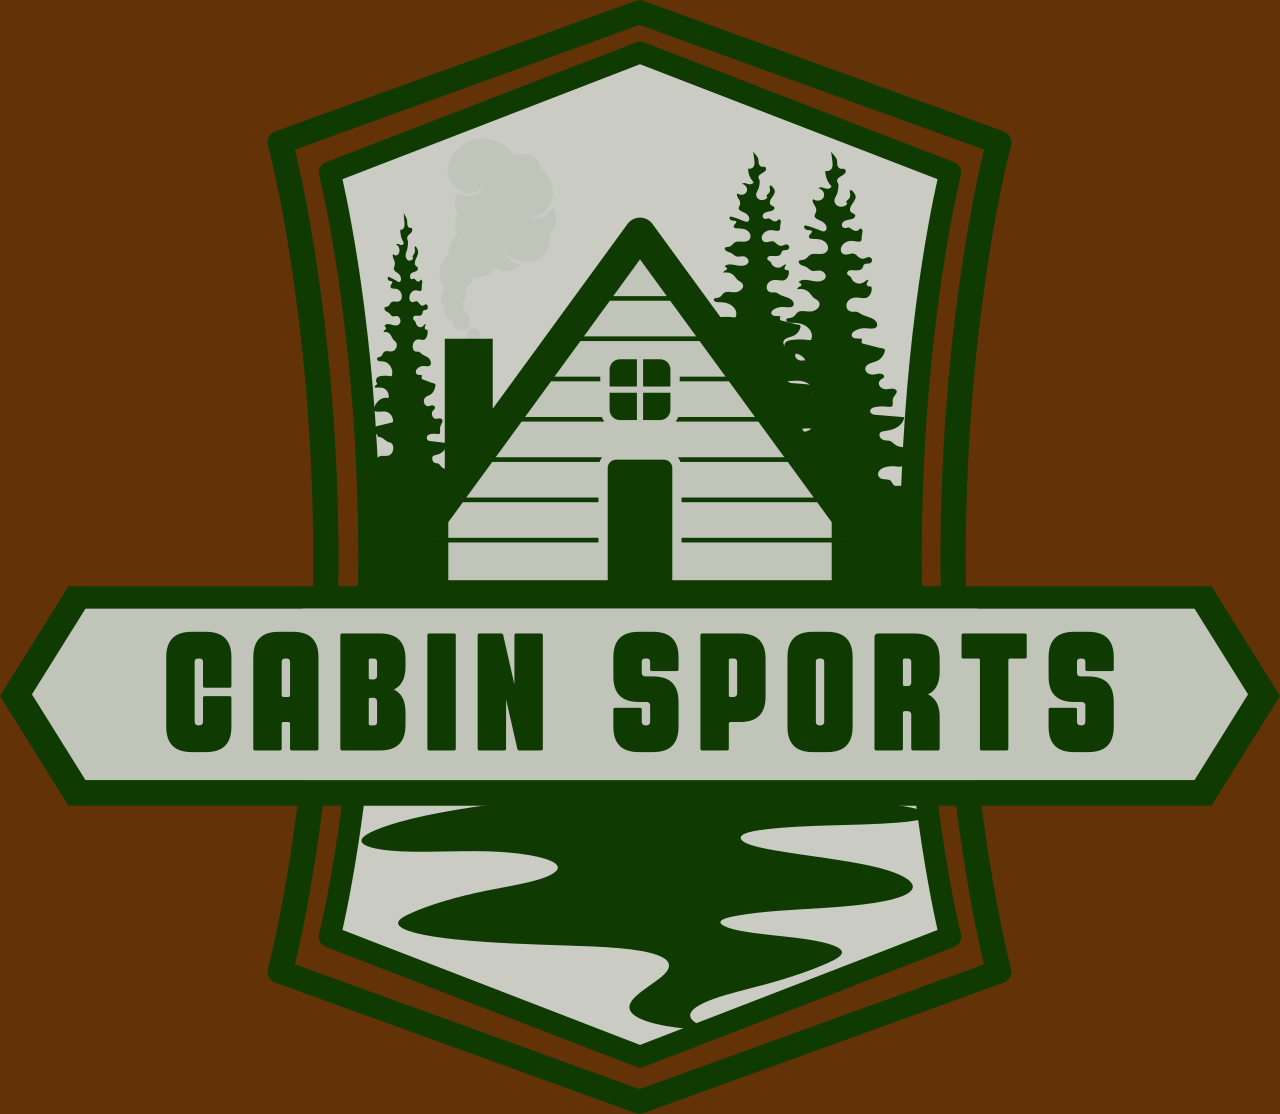 Cabin Sports's logo